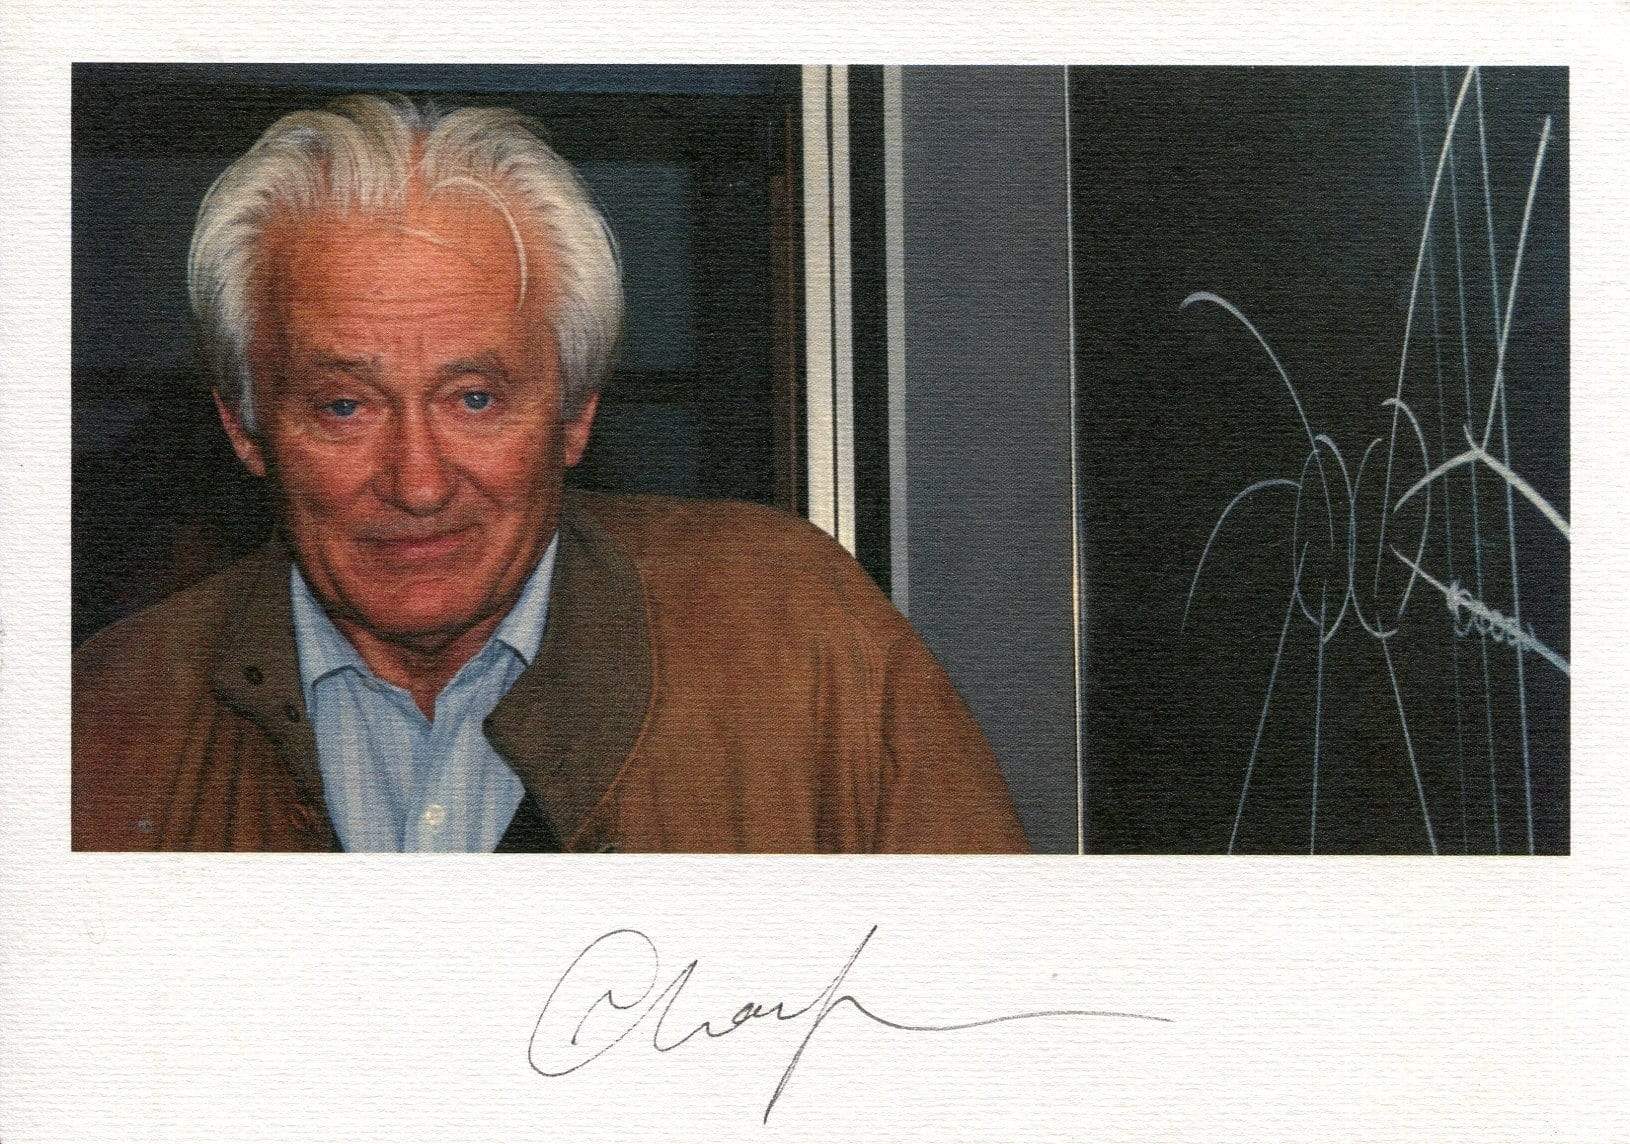 Charpak, Georges autograph